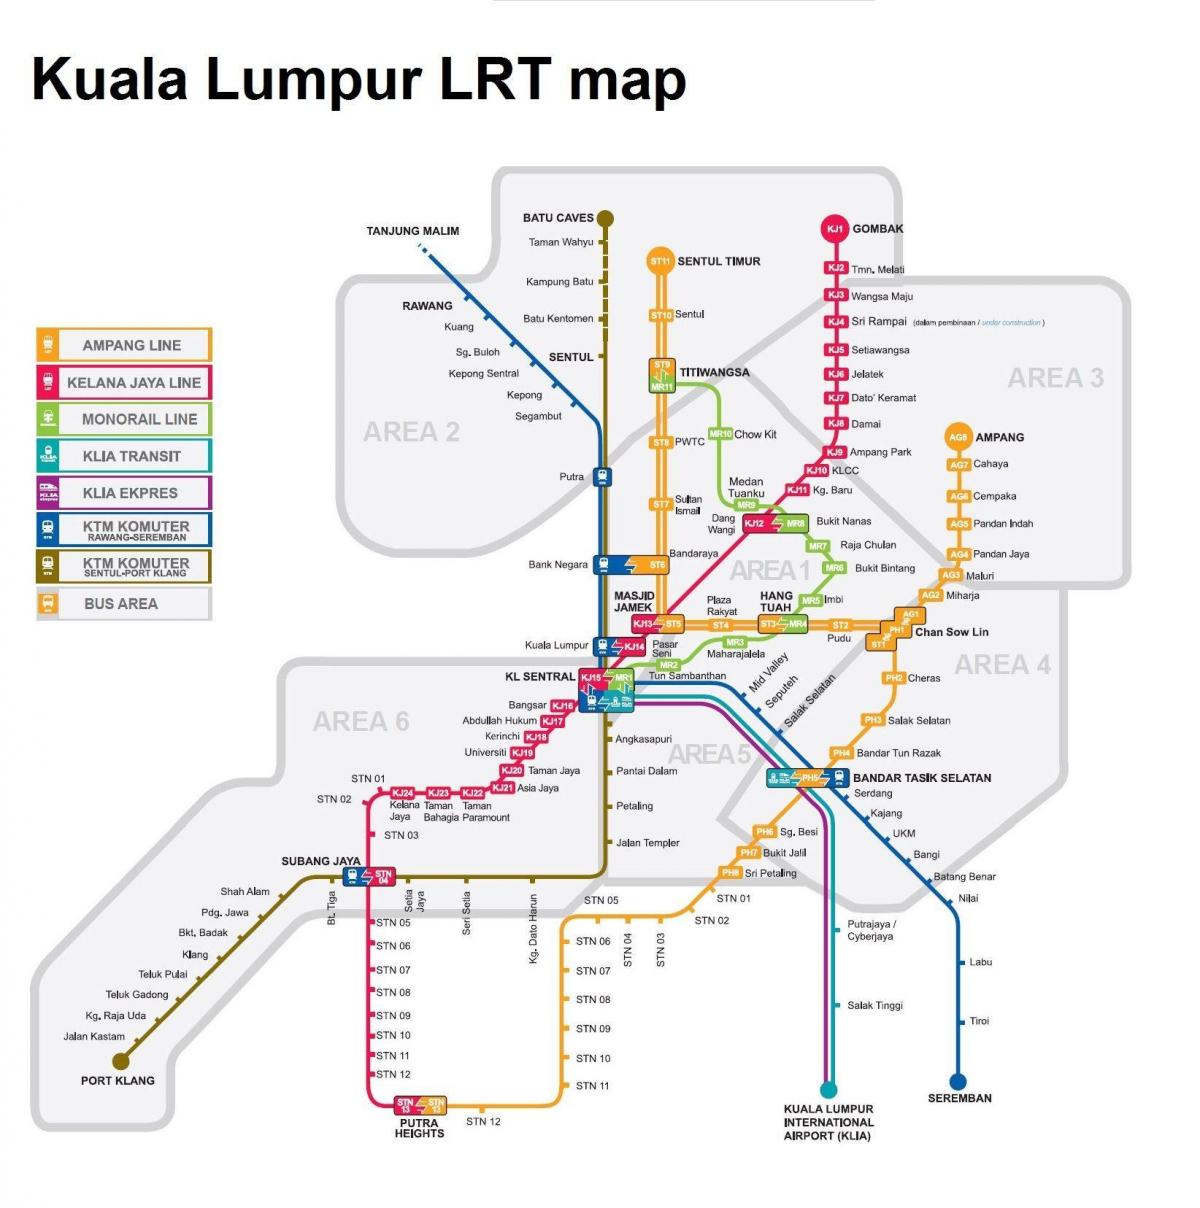 lrt mapu maleziji 2016